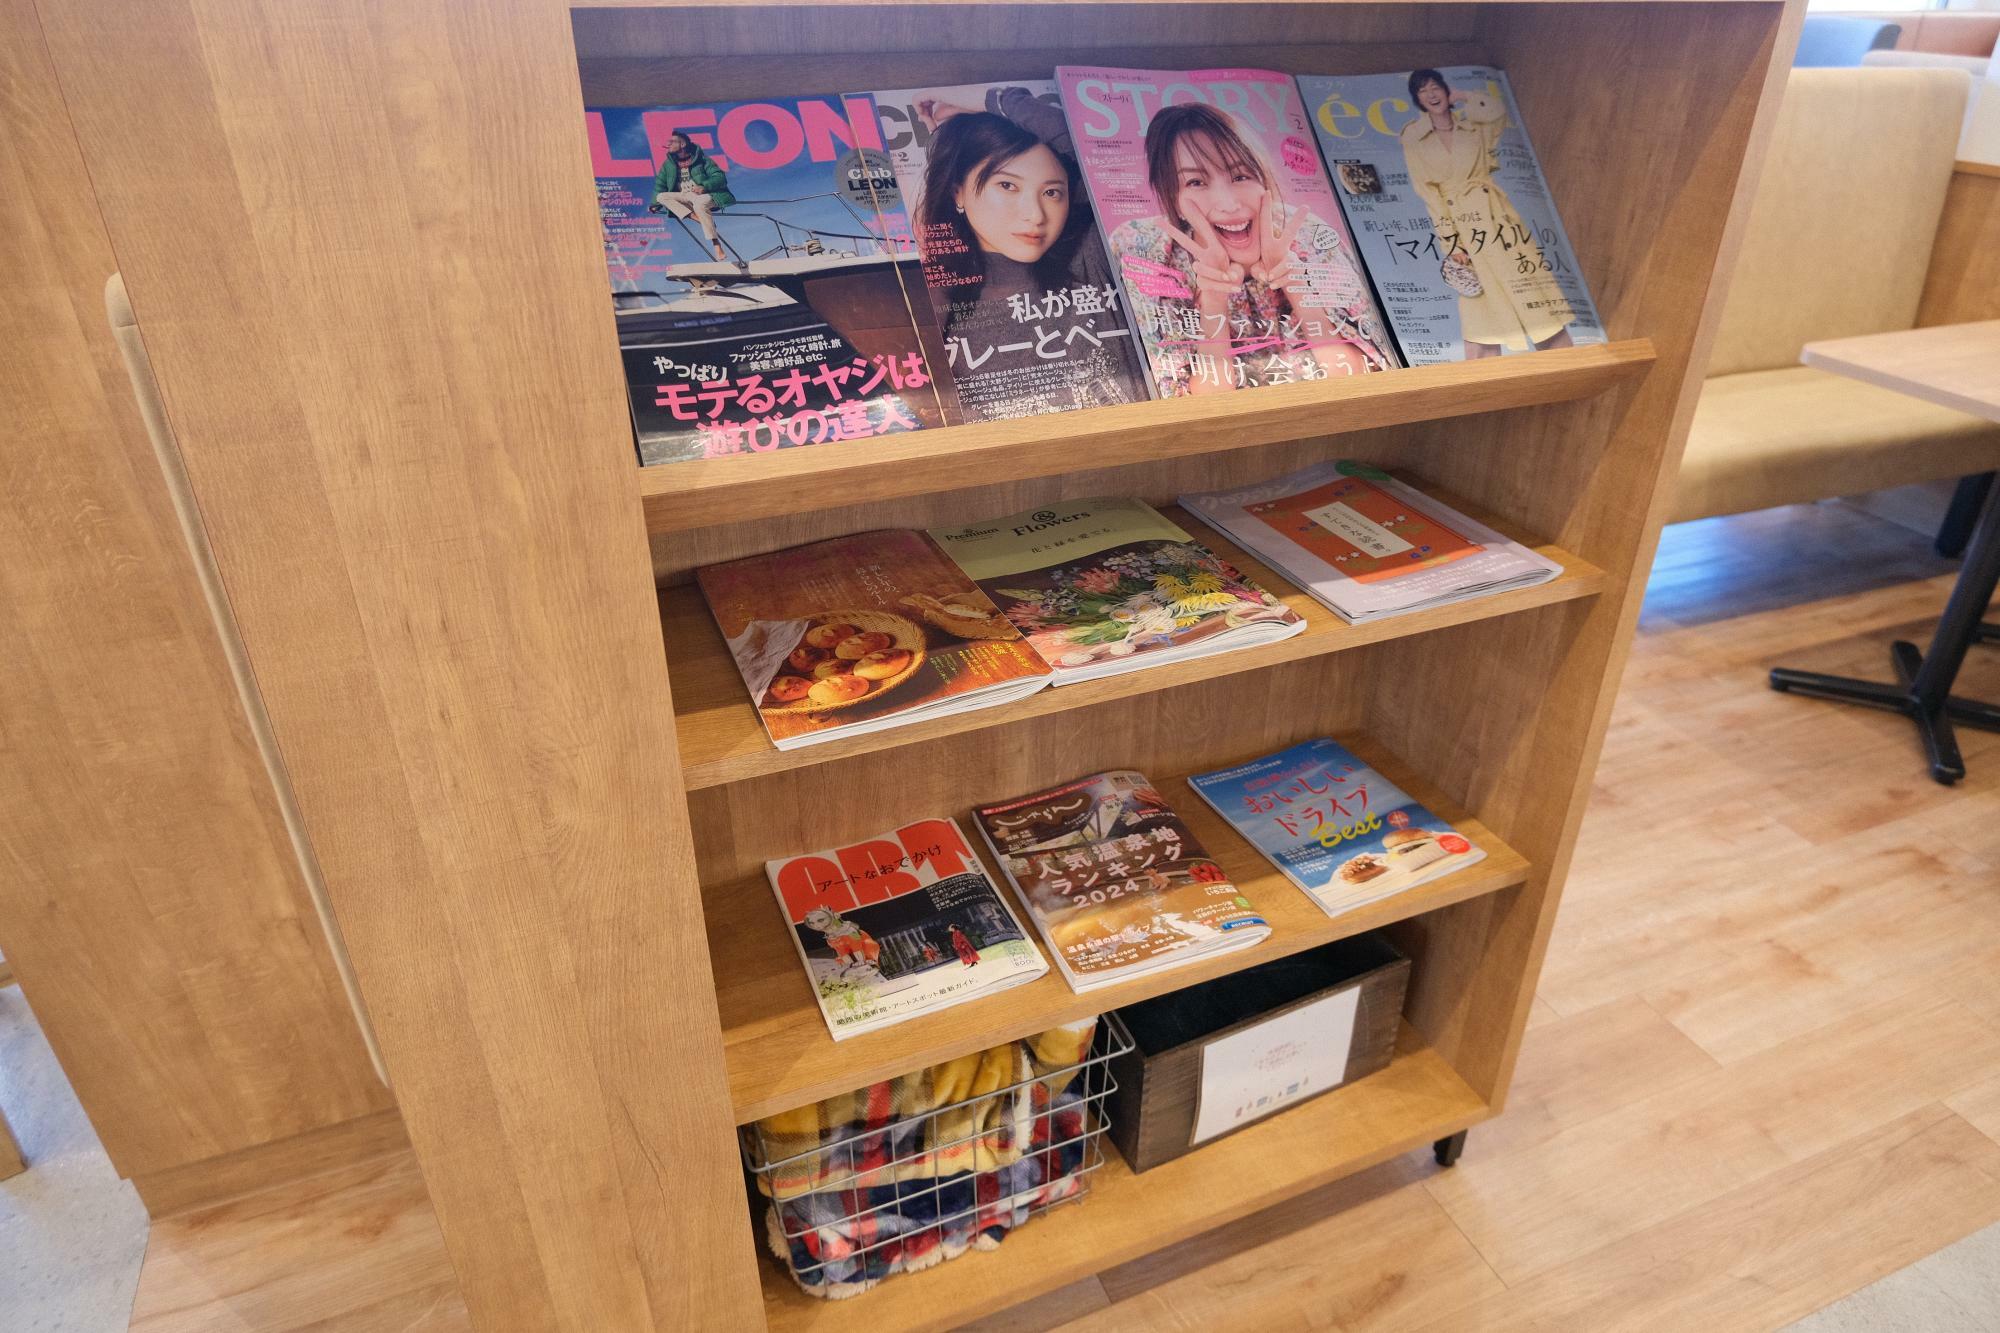 ファストフード店ではめずらしい “好きな雑誌を自由に読める”サービスも